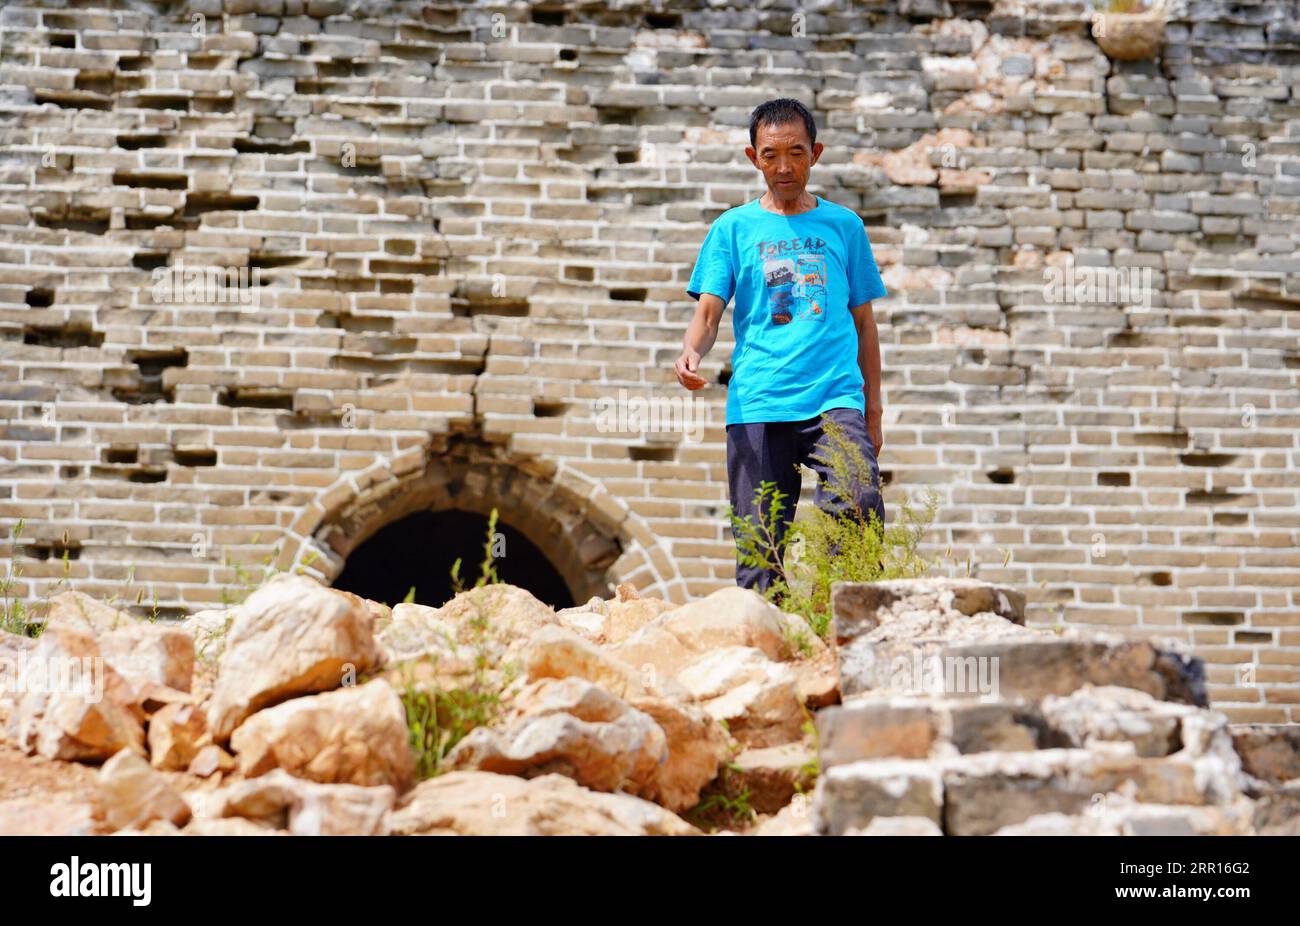 200906 -- TANGSHAN, 6. September 2020 -- Li Dewang patrouilliert die große Mauer Xuliukou im Dorf Xuliukou in der Stadt Qian an, Provinz Hebei in Nordchina, 4. September 2020. Li Dewang, 63, ist ein Dorfbewohner von Xuliukou, wo sich ein Teil der Chinesischen Mauer befindet, die aus der Ming-Dynastie von 1368 bis 1644 erbaut wurde. Seit 2008 ist der 63-Jährige ein Beschützer der Großen Mauer und er ist verantwortlich für den Schutz eines fast drei Kilometer langen Abschnitts. In den letzten 12 Jahren patrouillierte er fast täglich auf der Chinesischen Mauer, während er Müll und Unkraut beseitigte und Touristen und Hirten daran erinnerte, die Mauer zu erhalten. Stockfoto